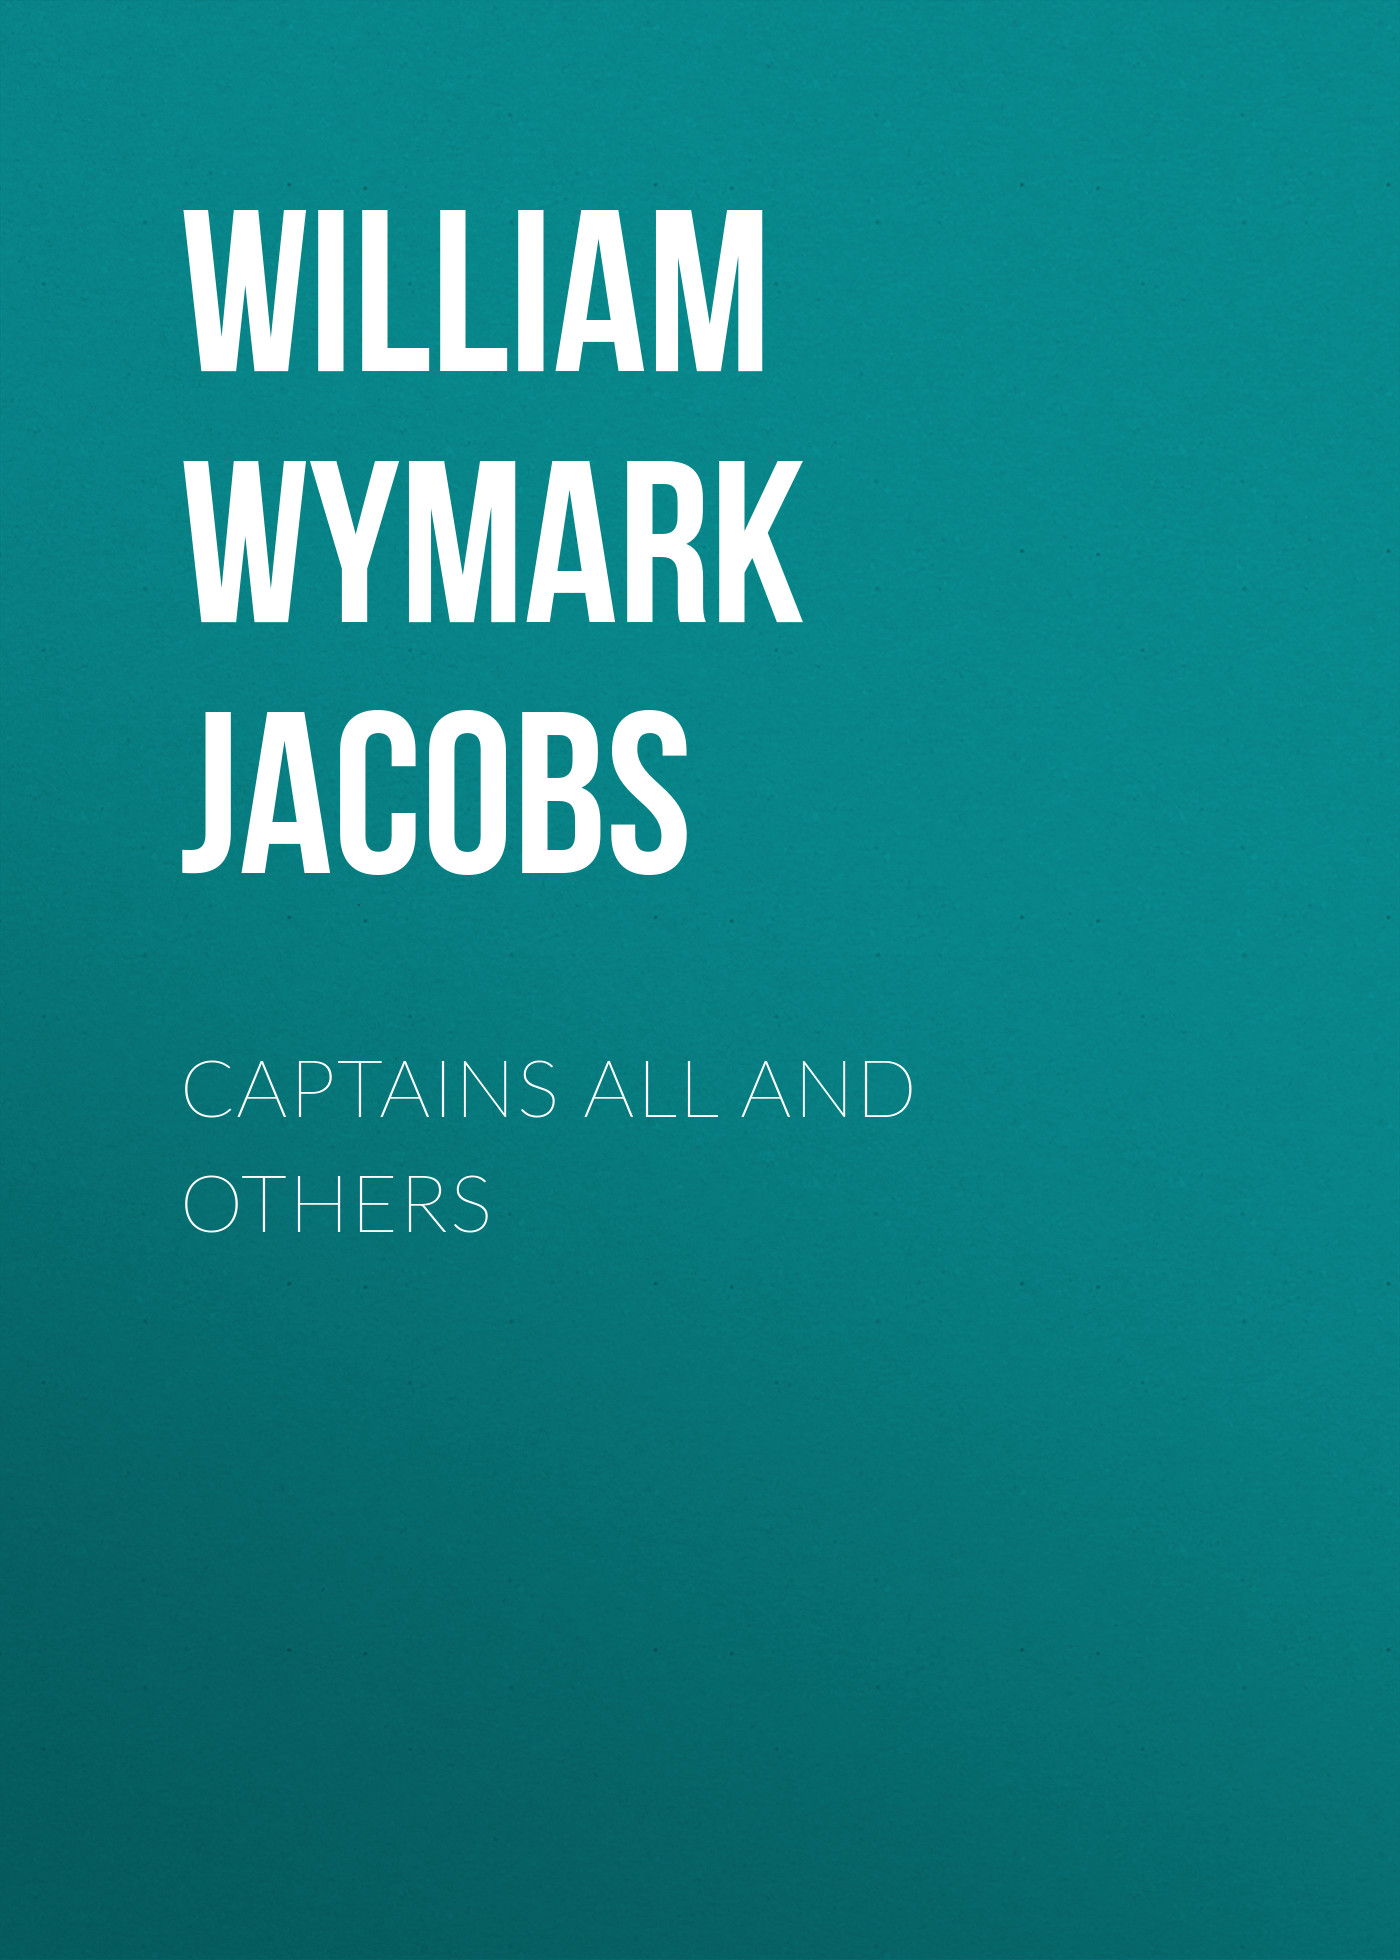 Книга Captains All and Others из серии , созданная William Wymark Jacobs, может относится к жанру Зарубежный юмор, Зарубежная старинная литература, Зарубежная классика. Стоимость электронной книги Captains All and Others с идентификатором 34843806 составляет 0 руб.